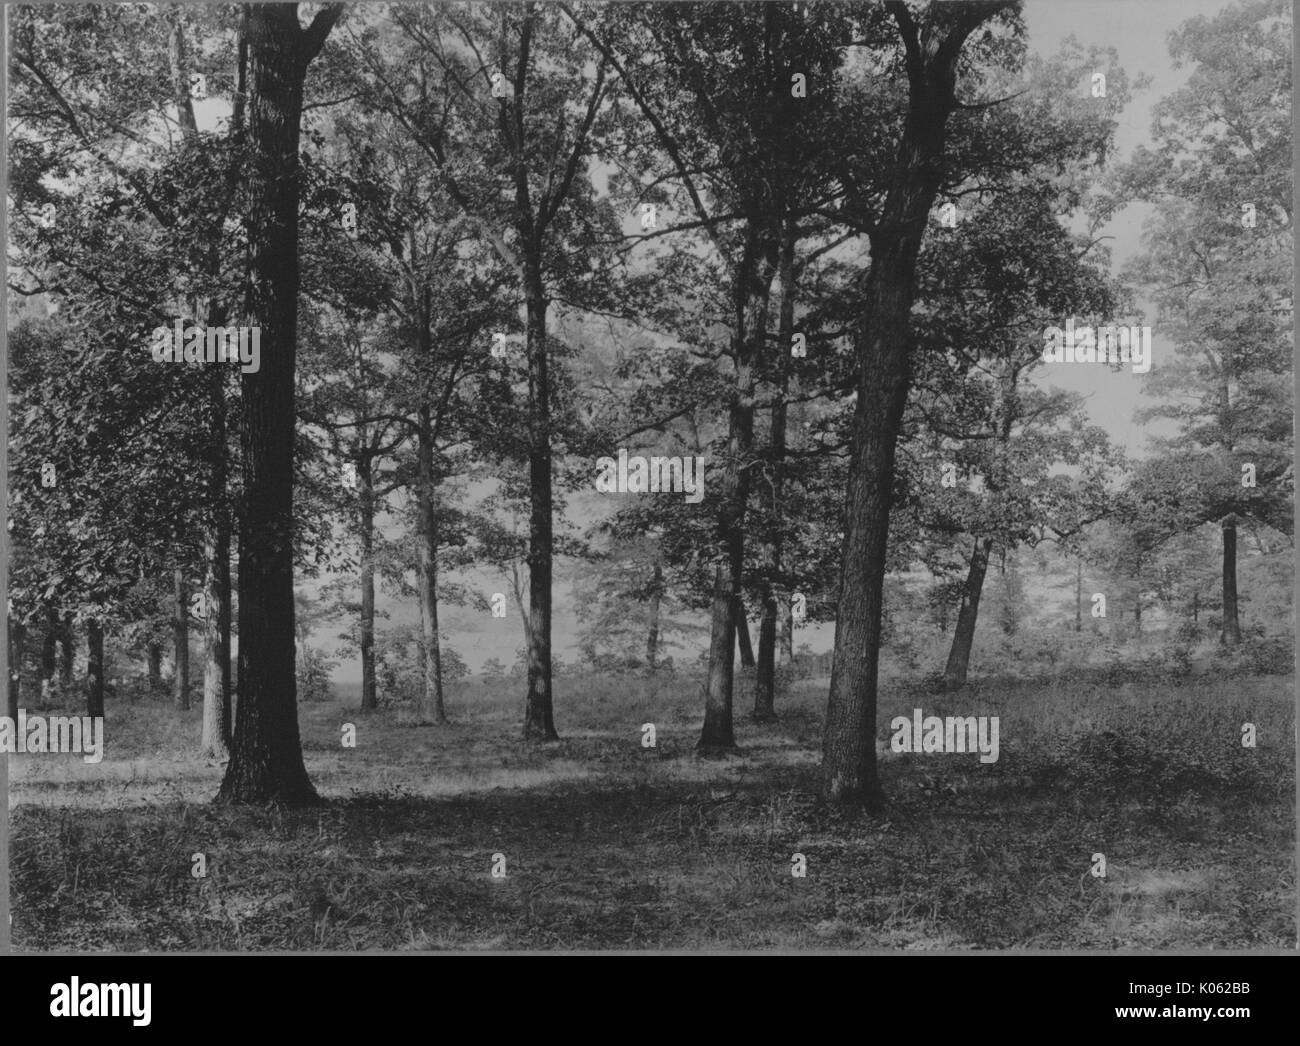 Unbesetztes Land in der Nähe von Roland Park und Guilford, einen Blick auf die vielen verstreuten Bäumen, United States, 1910. Dieses Bild wird von einer Reihe dokumentieren den Bau und den Verkauf von Wohnungen in der Roland Park/Guilford Nachbarschaft von Baltimore, einer Straßenbahn Vorort und eines der ersten geplanten Gemeinschaften in den Vereinigten Staaten. Stockfoto